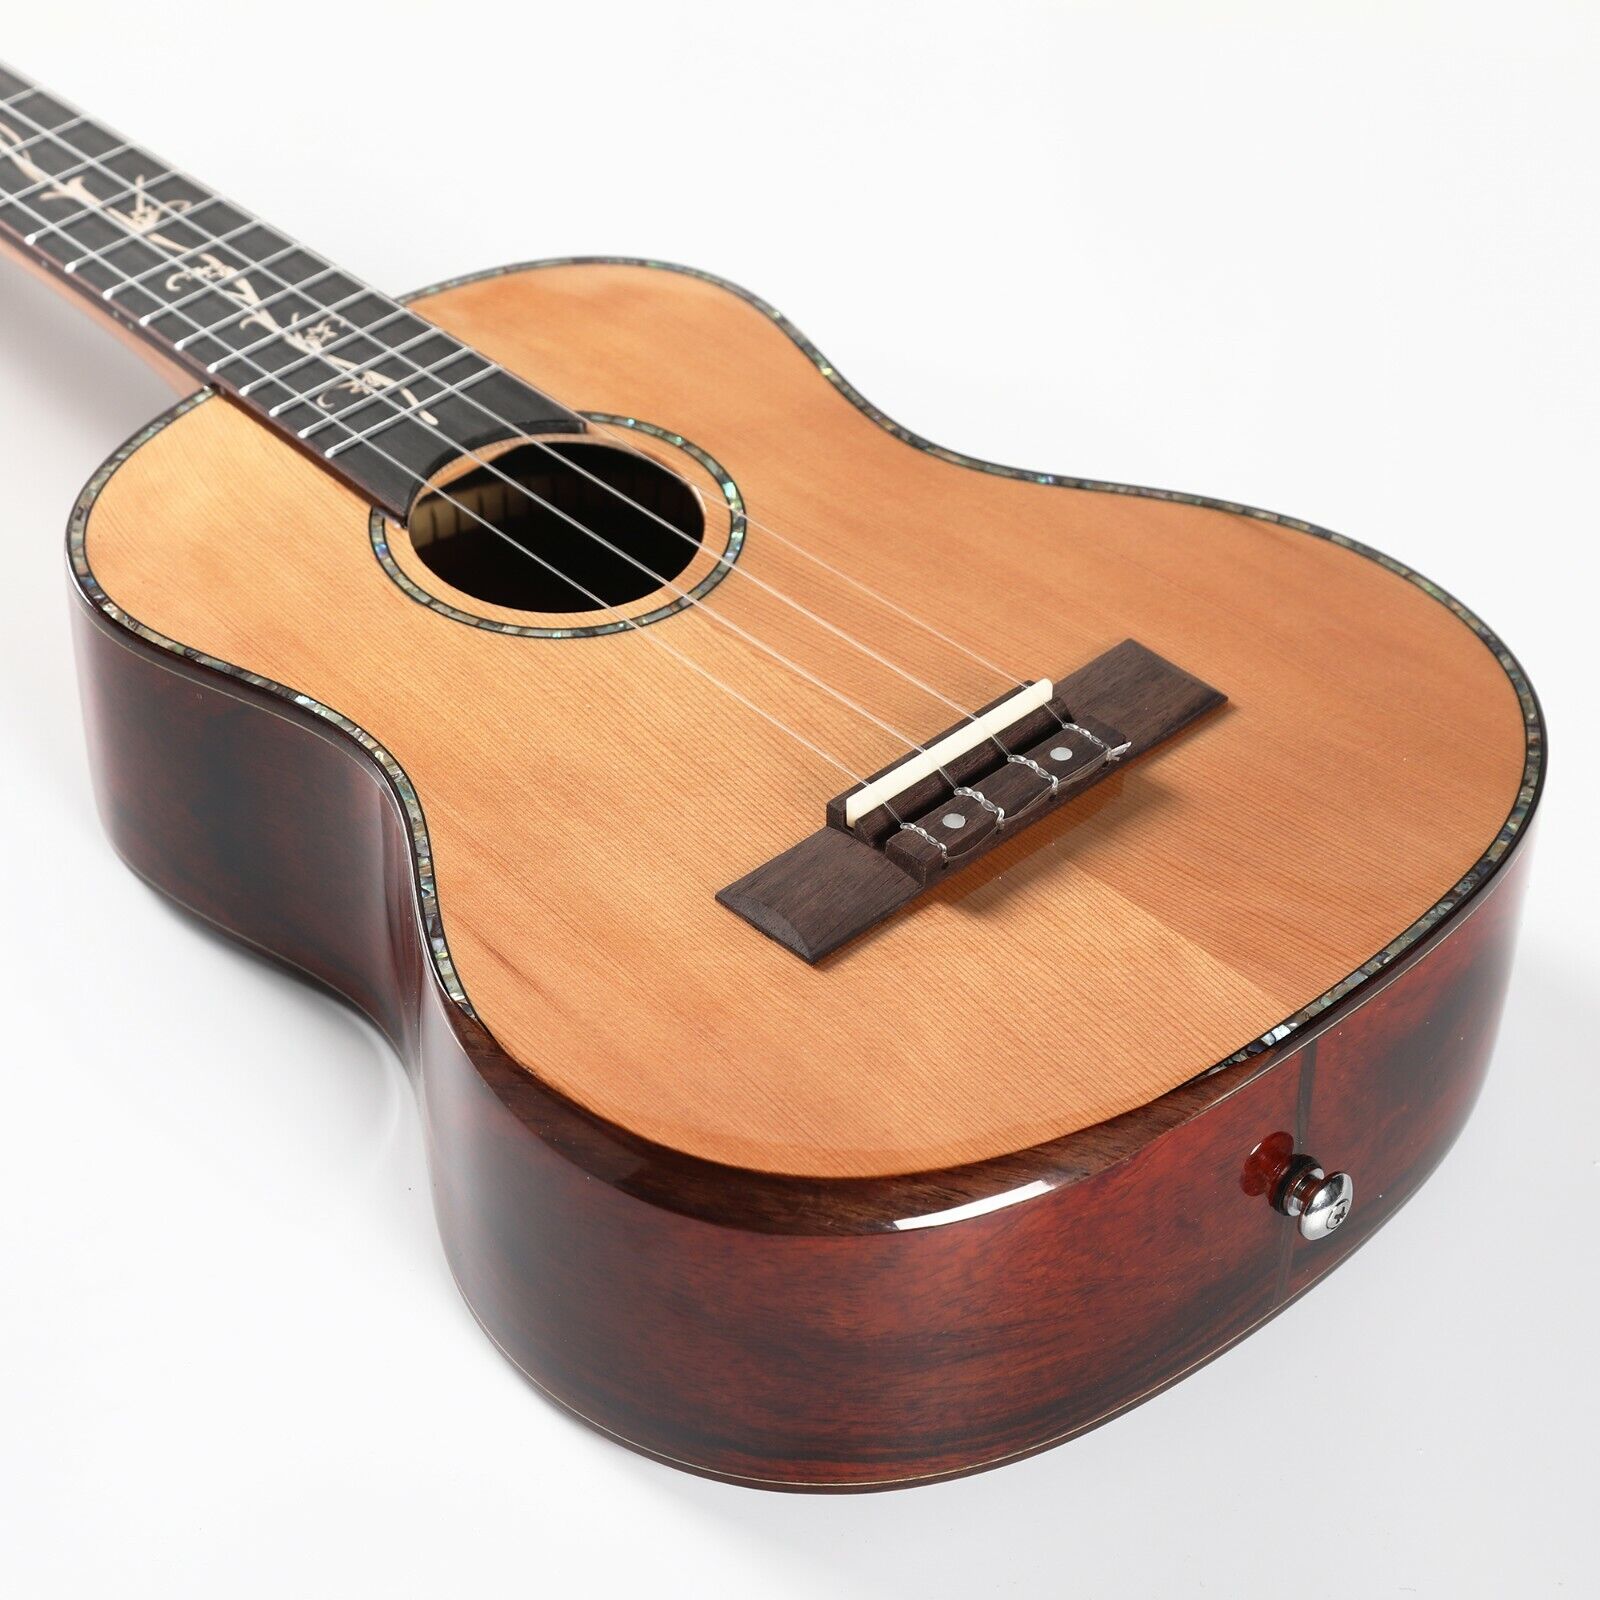 23 Inch Ukulele Guitar 6 String Small Guitar Children’s Beginner Practice Gift 2